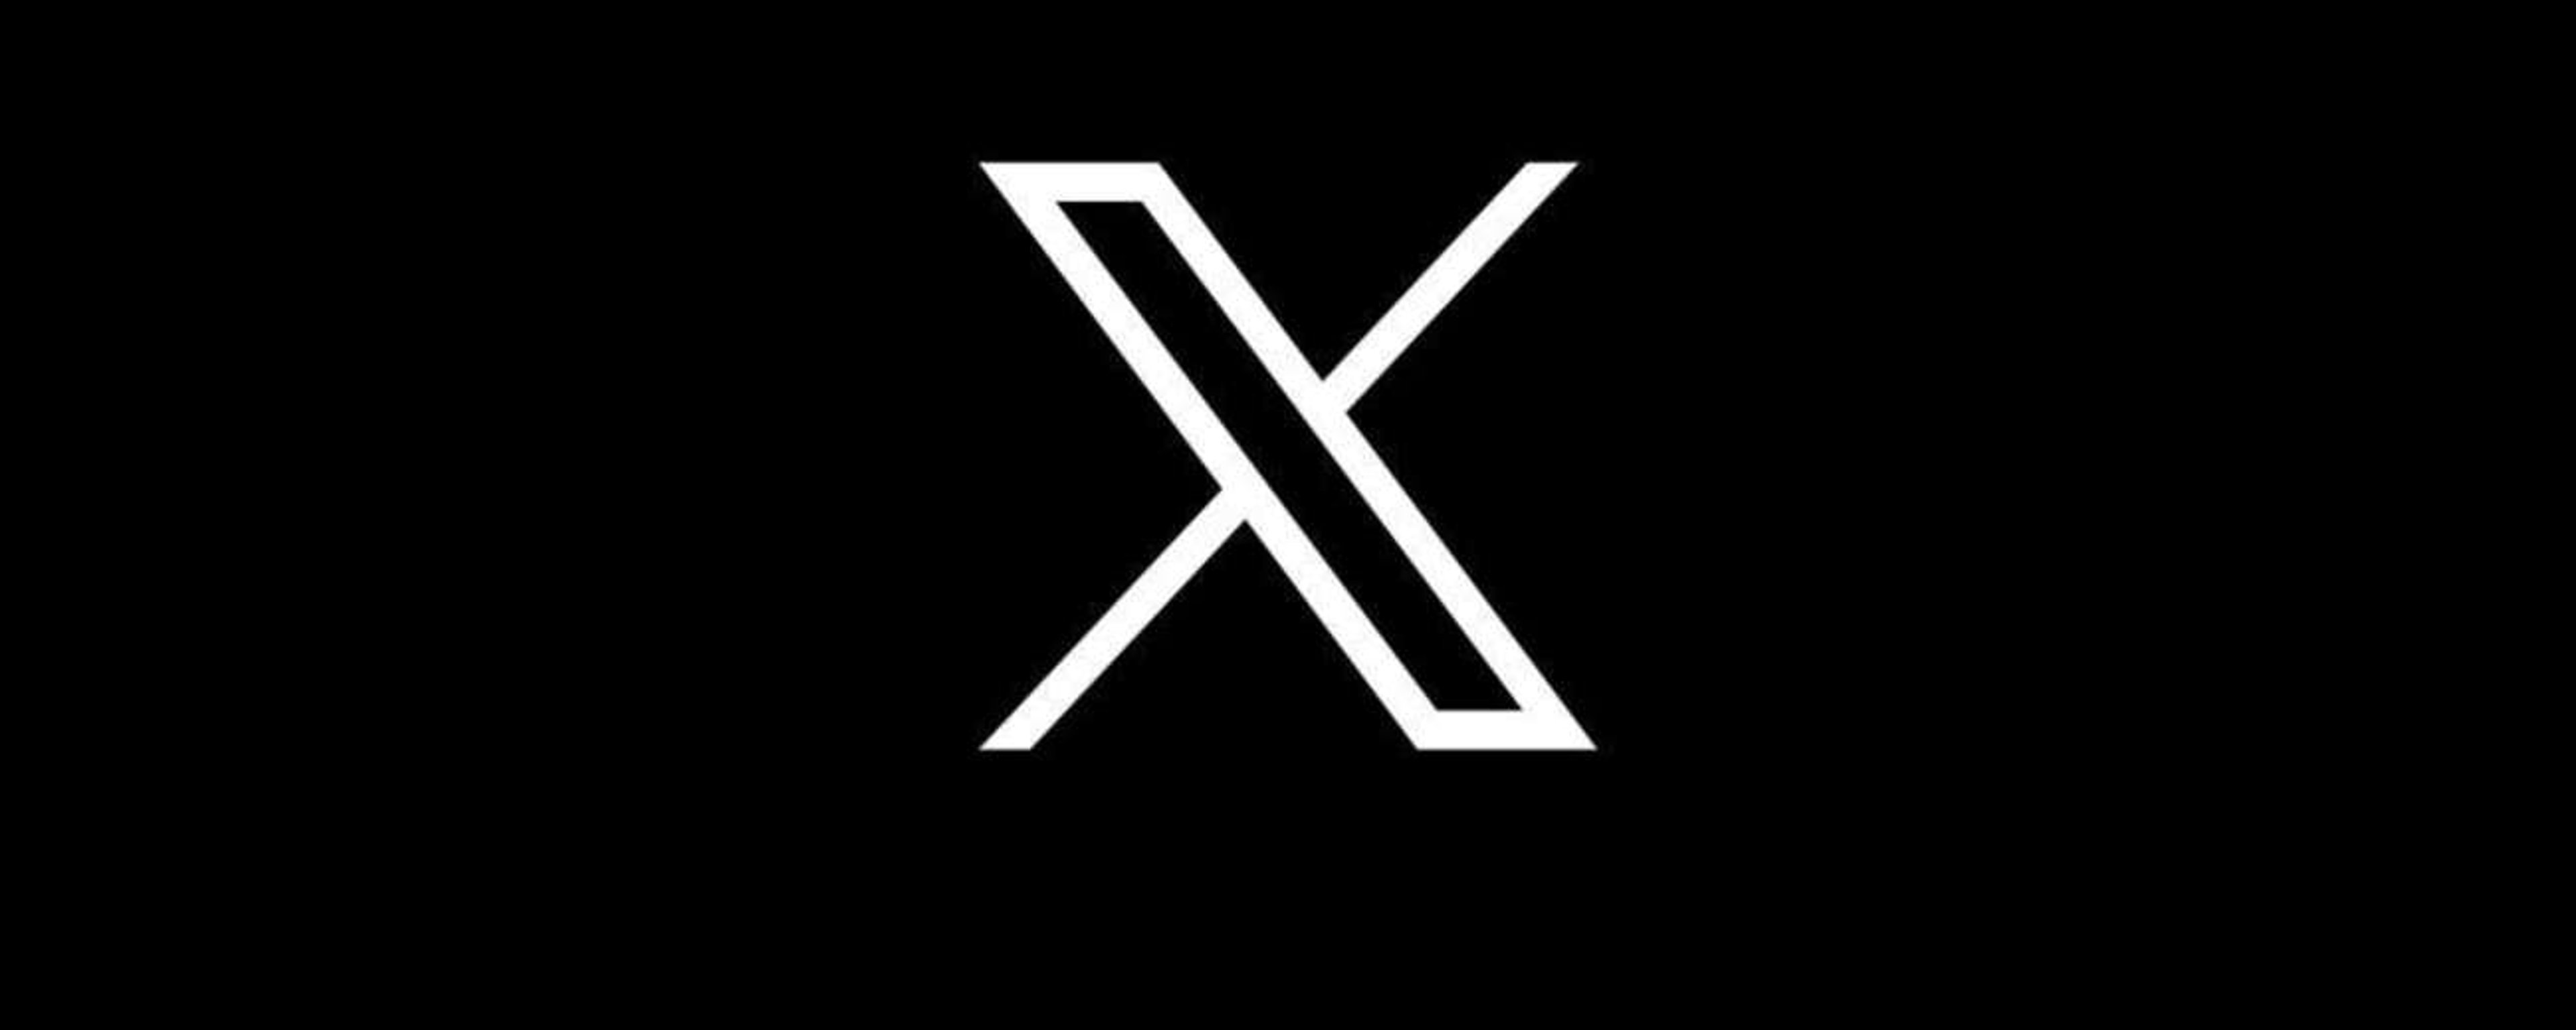 Twitter è “morto”: X è ora disponibile su iOS Copertina